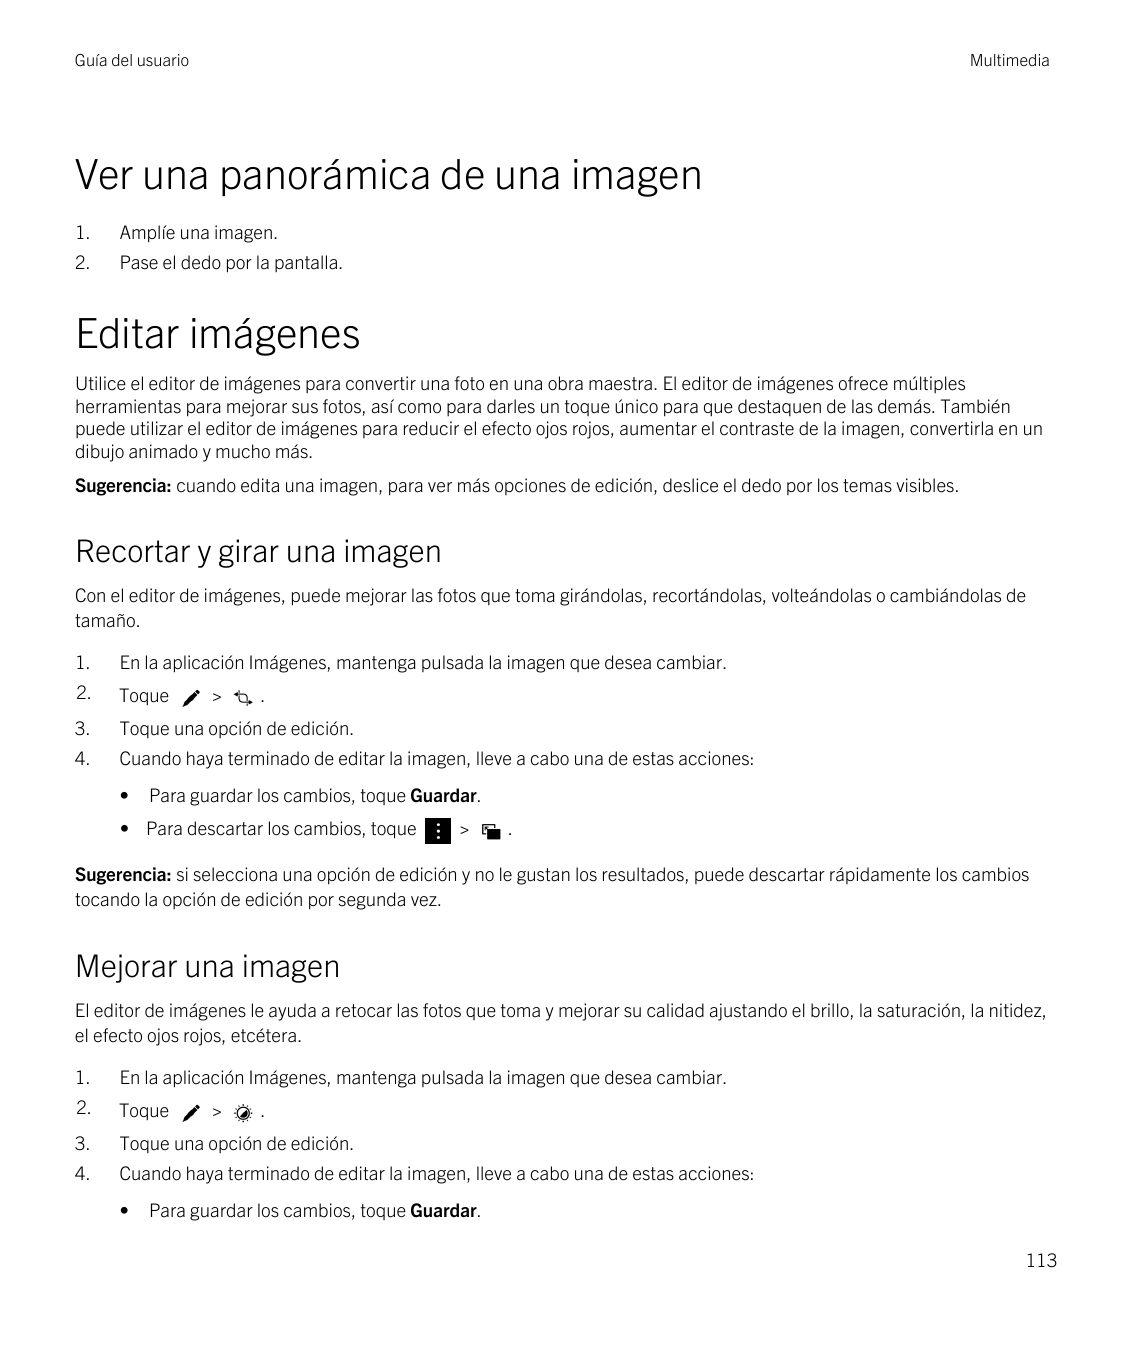 Guía del usuarioMultimediaVer una panorámica de una imagen1.Amplíe una imagen.2.Pase el dedo por la pantalla.Editar imágenesUtil